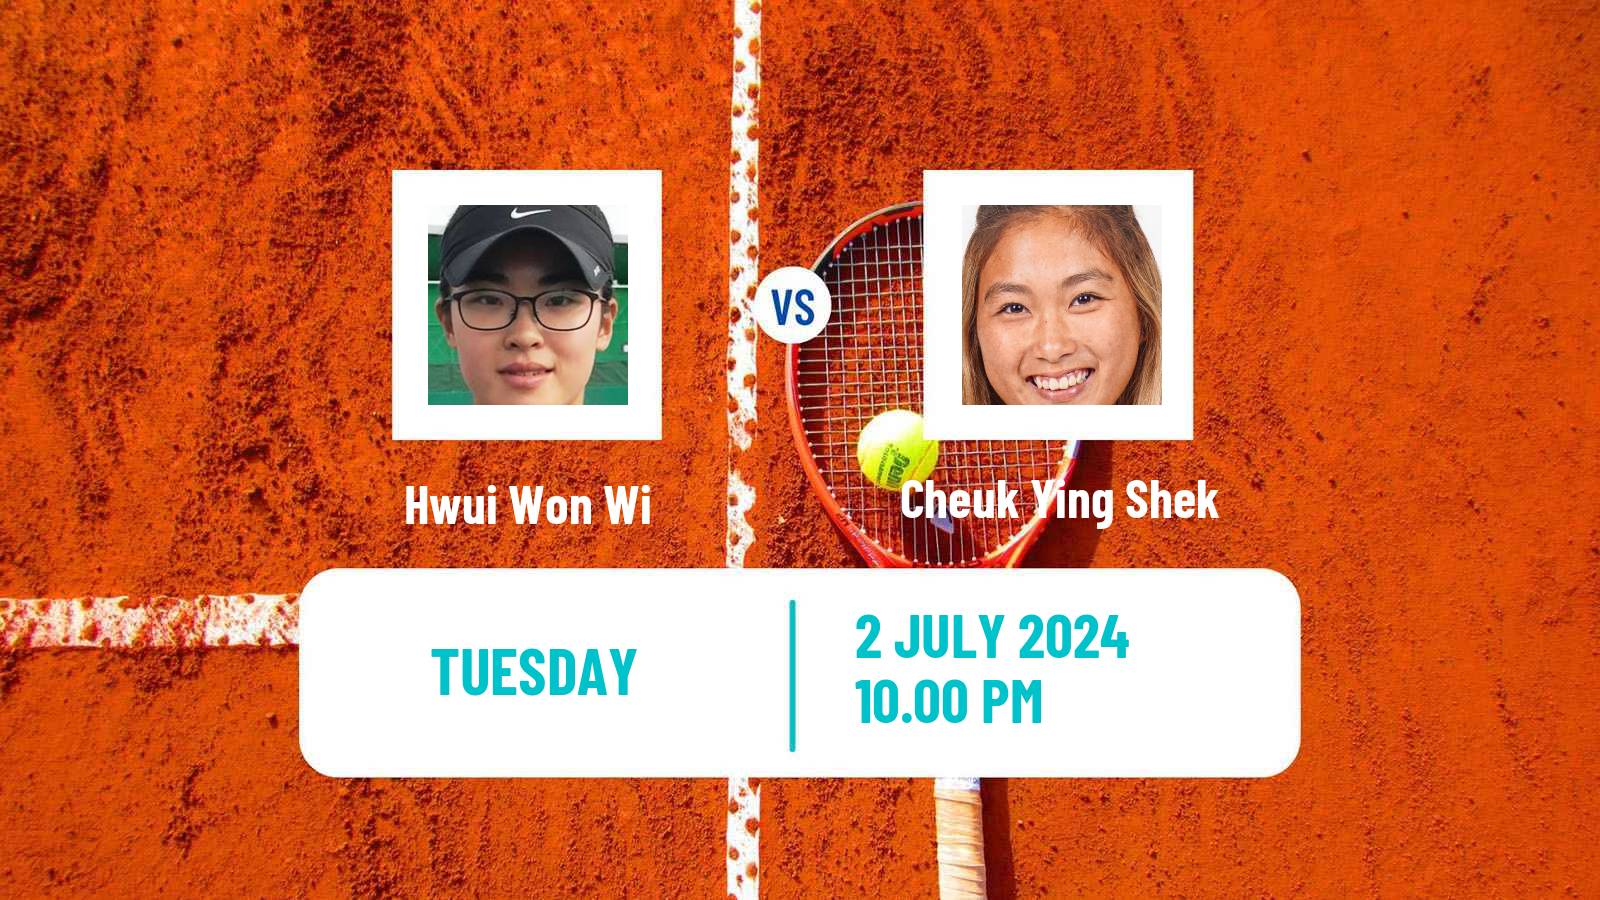 Tennis ITF W35 Hong Kong Women Hwui Won Wi - Cheuk Ying Shek